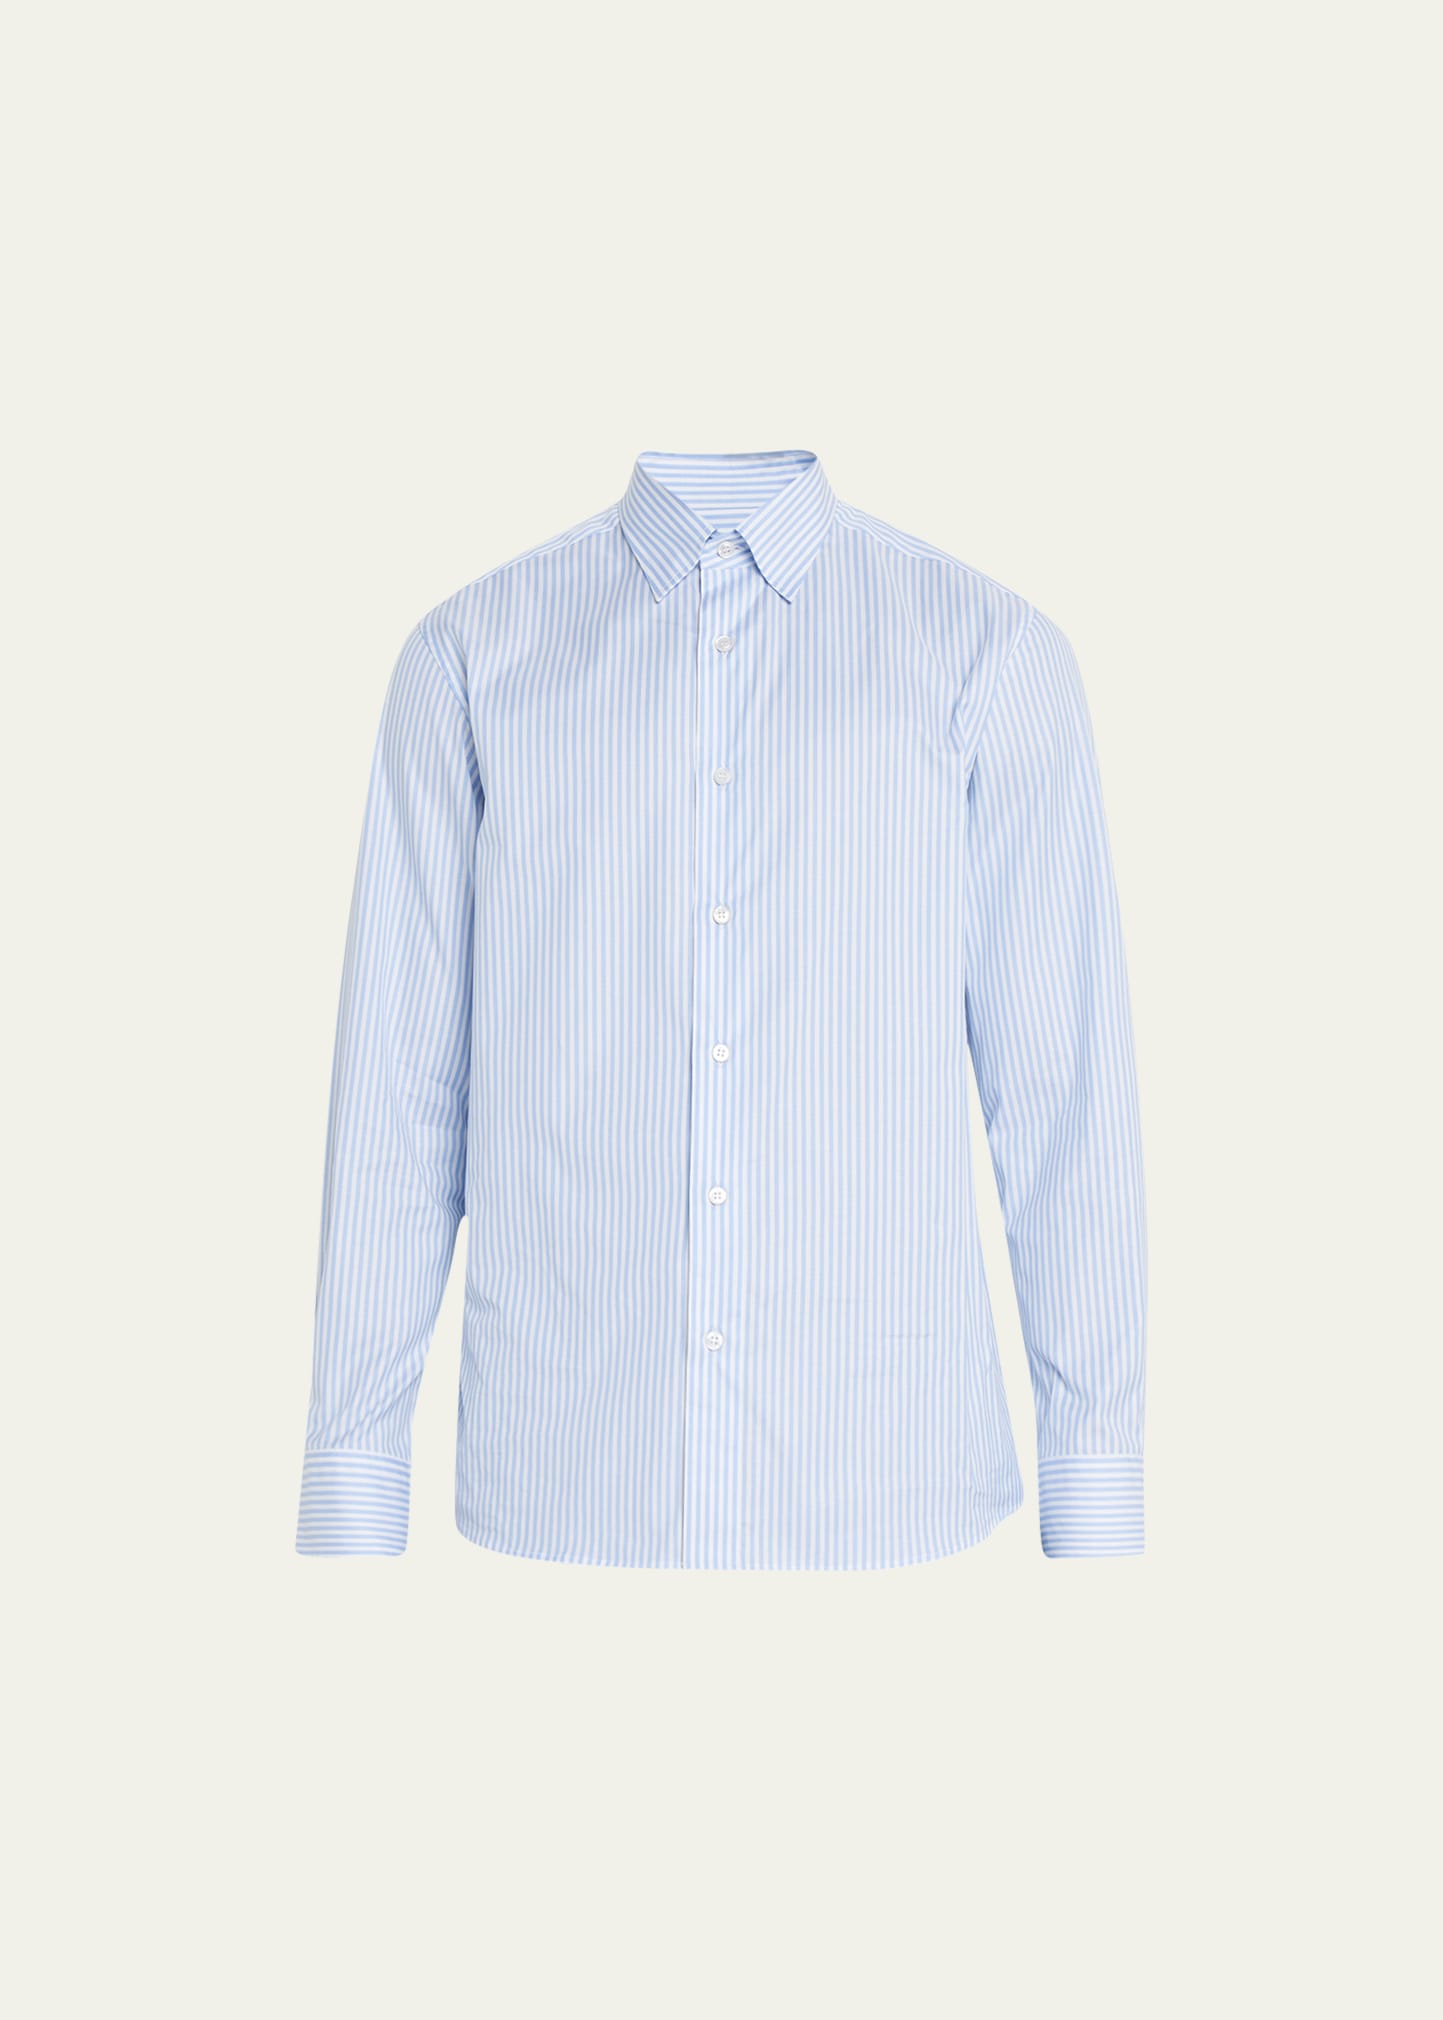 Brioni 条纹棉质衬衫 In Blue,white